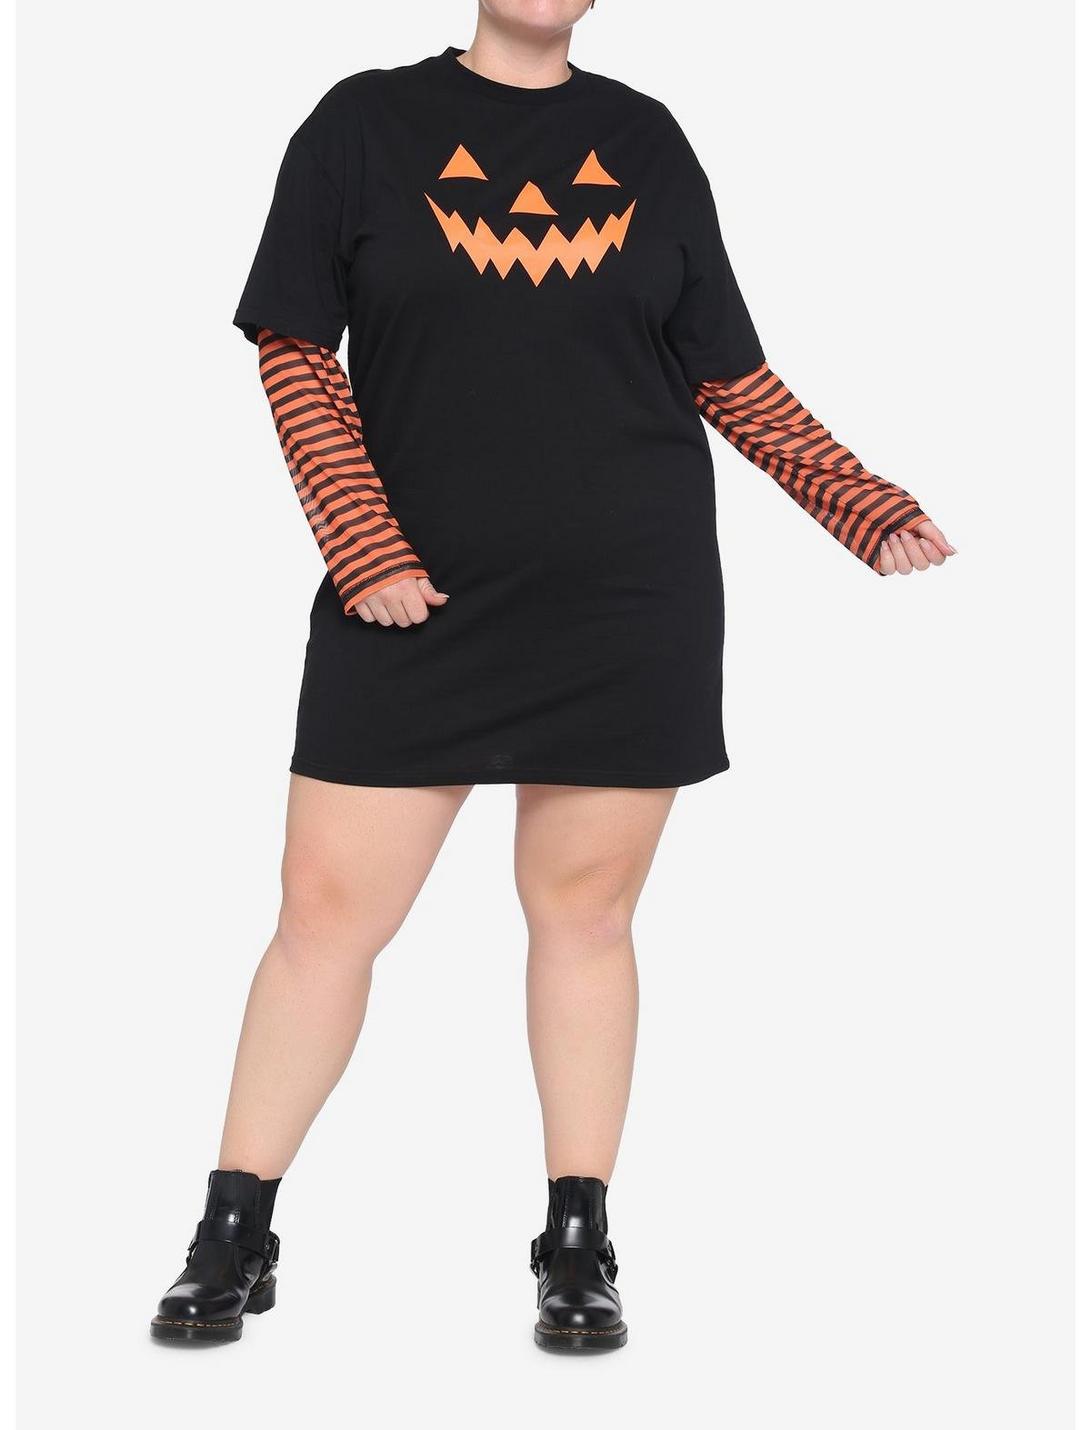 Orange & Black Stripe Pumpkin Twofer T-Shirt Dress Plus Size, BLACK, hi-res